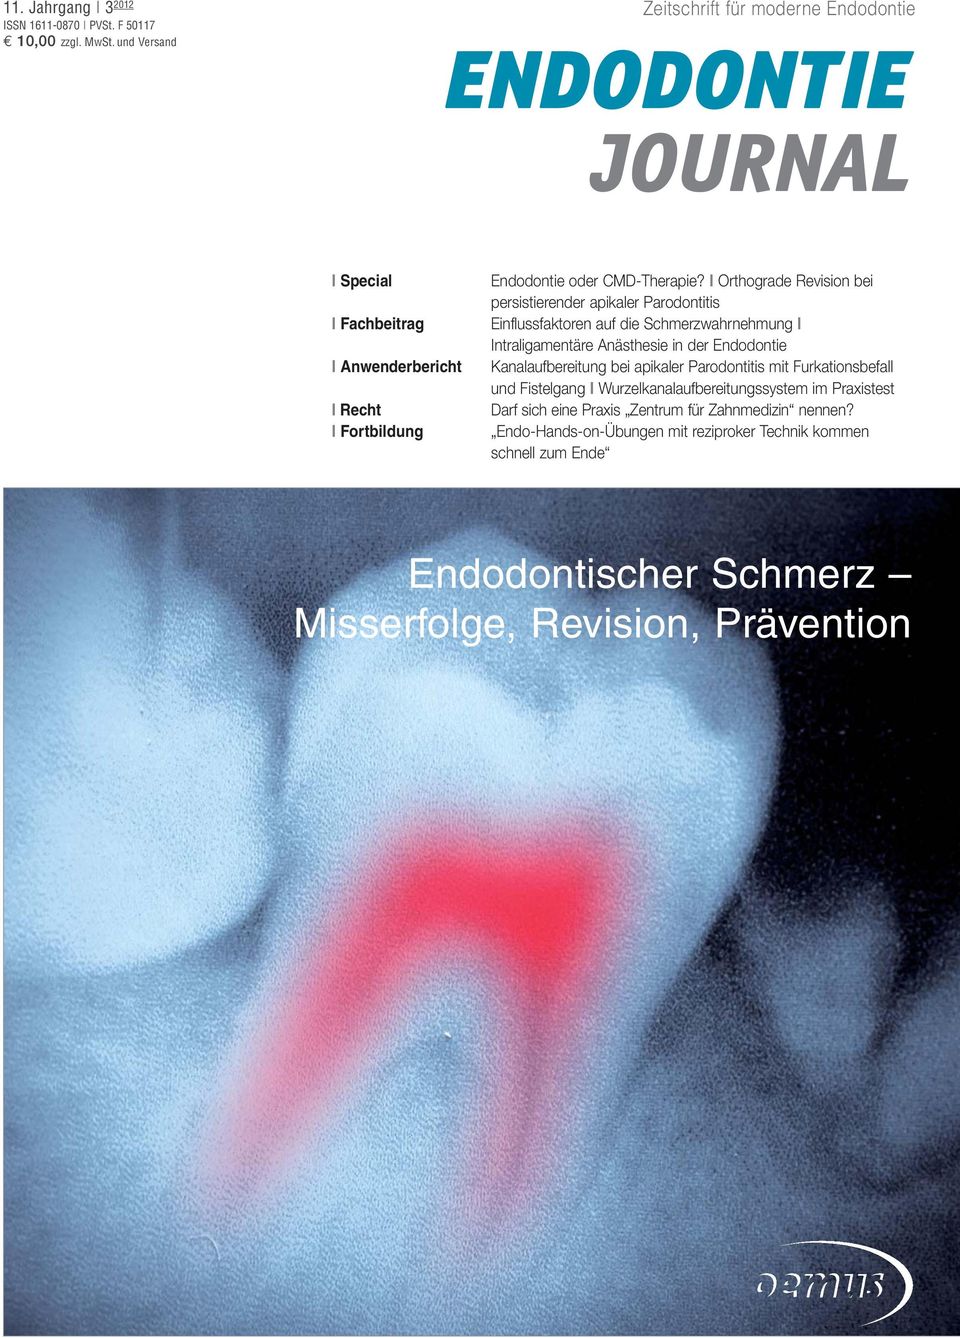 I Orthograde Revision bei persistierender apikaler Parodontitis Einflussfaktoren auf die Schmerzwahrnehmung I Intraligamentäre Anästhesie in der Endodontie